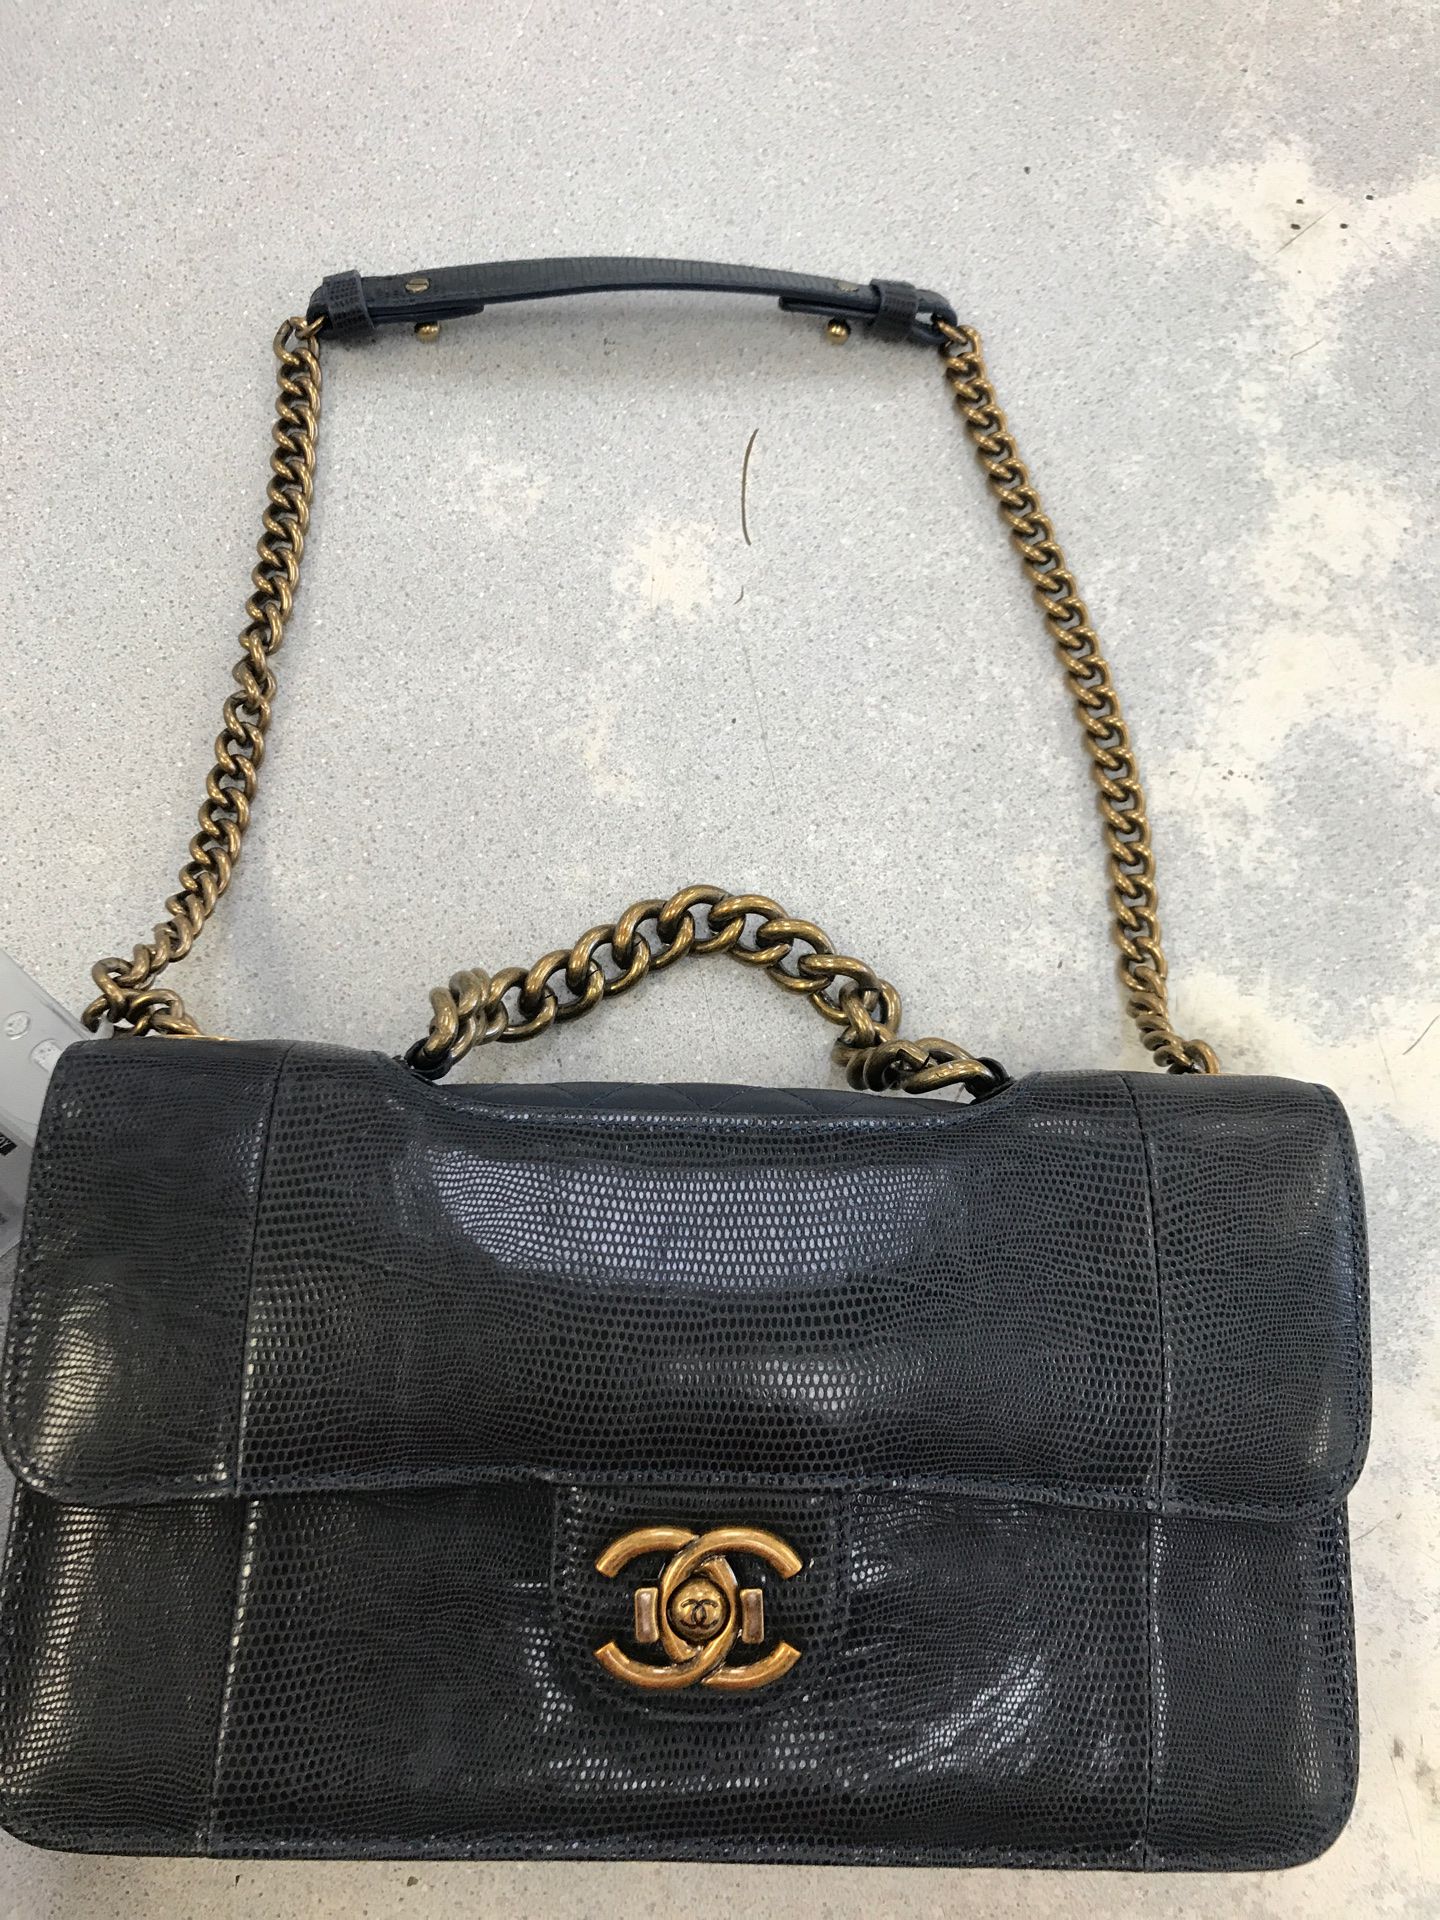 Chanel bag satchel bag